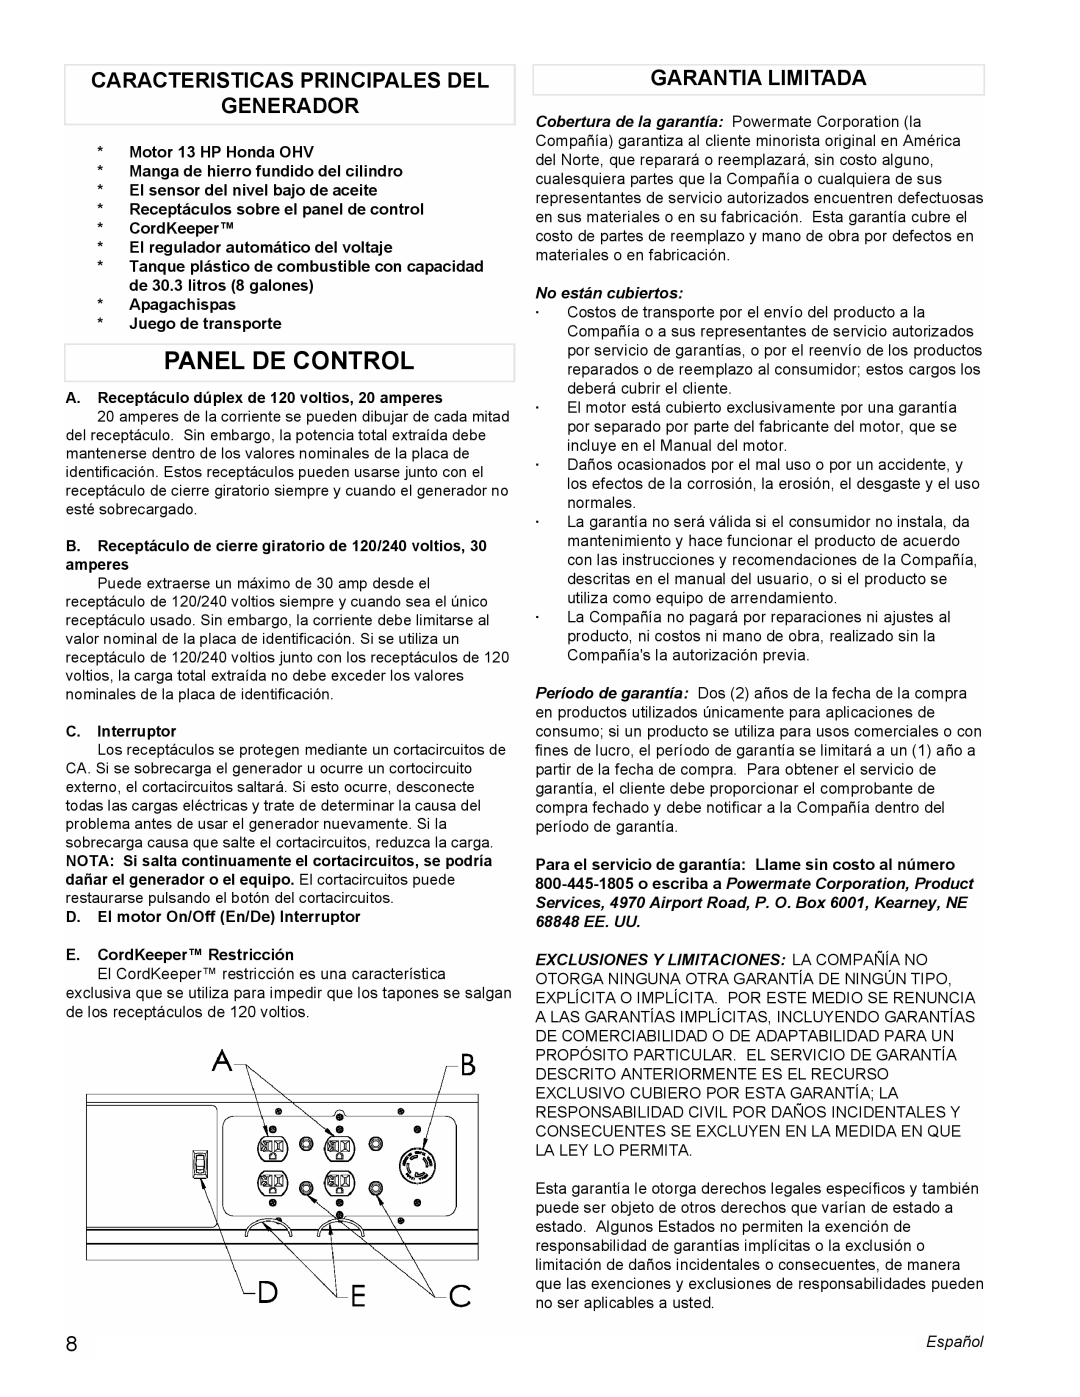 Powermate PMC497000 manual Panel De Control, Caracteristicas Principales Del Generador, Garantia Limitada 